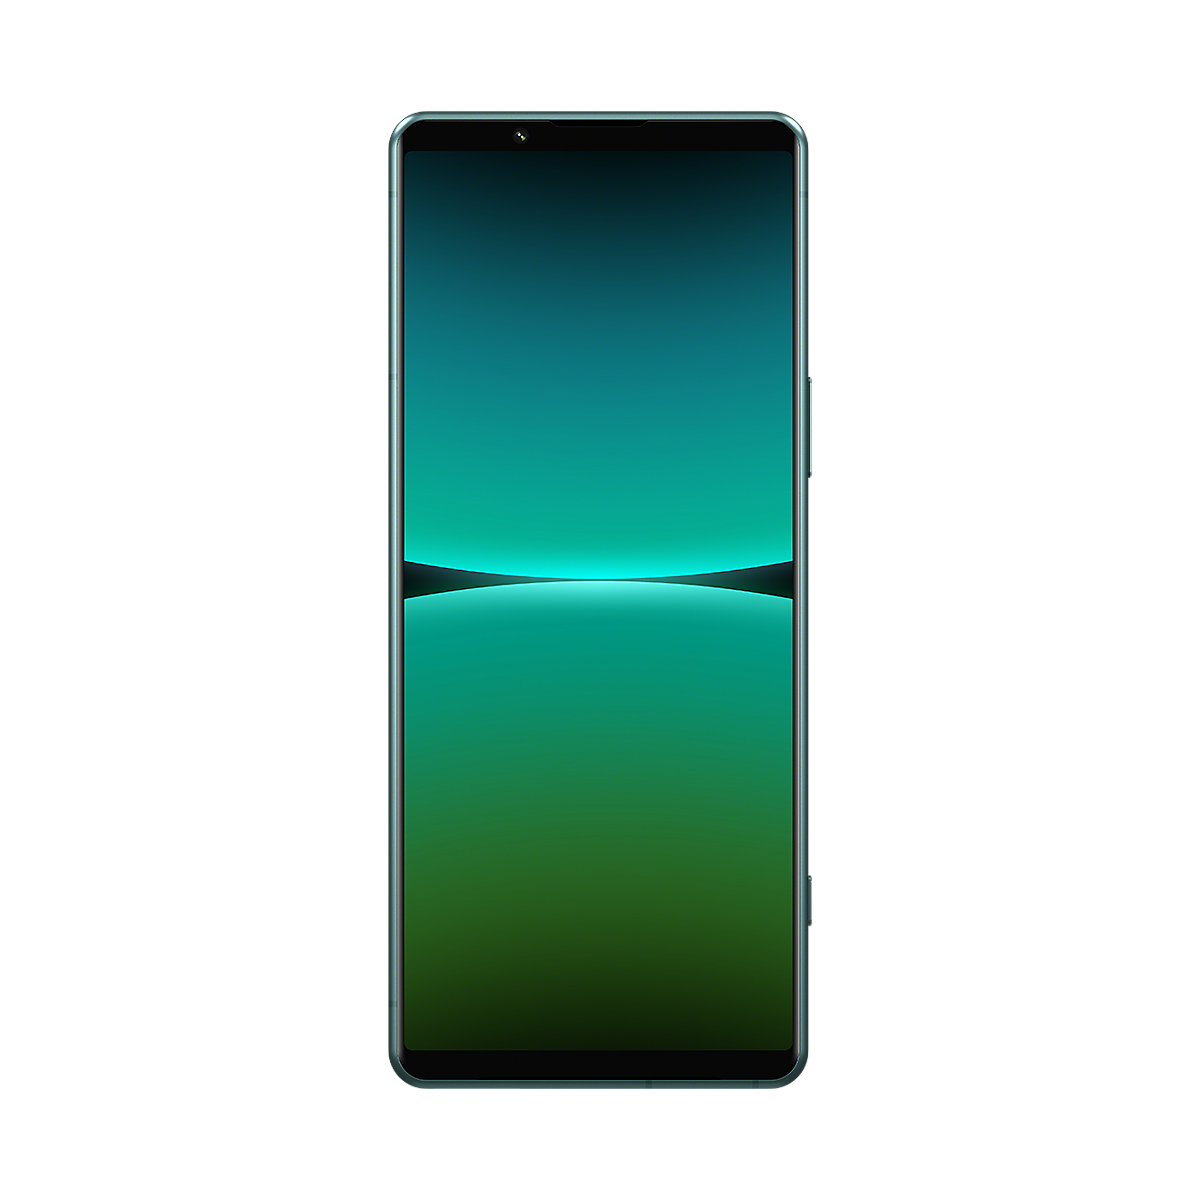 Pohled zepředu na smartphone Xperia 5 IV v zelené barvě